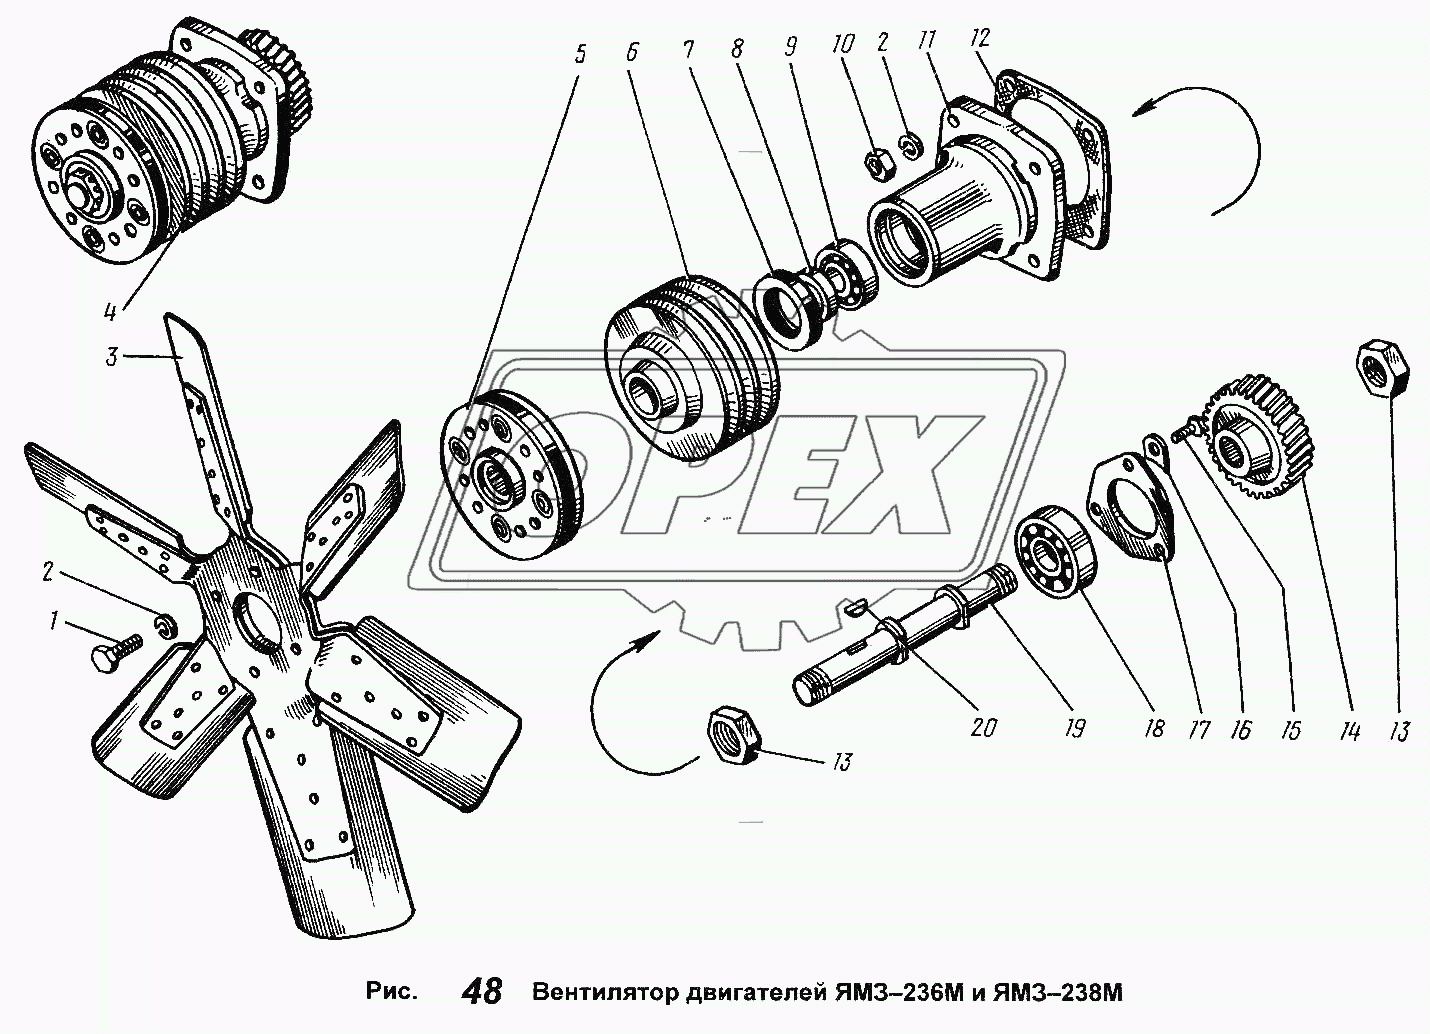 Вентилятор двигателей ЯМЗ-236М и ЯМЗ-238М